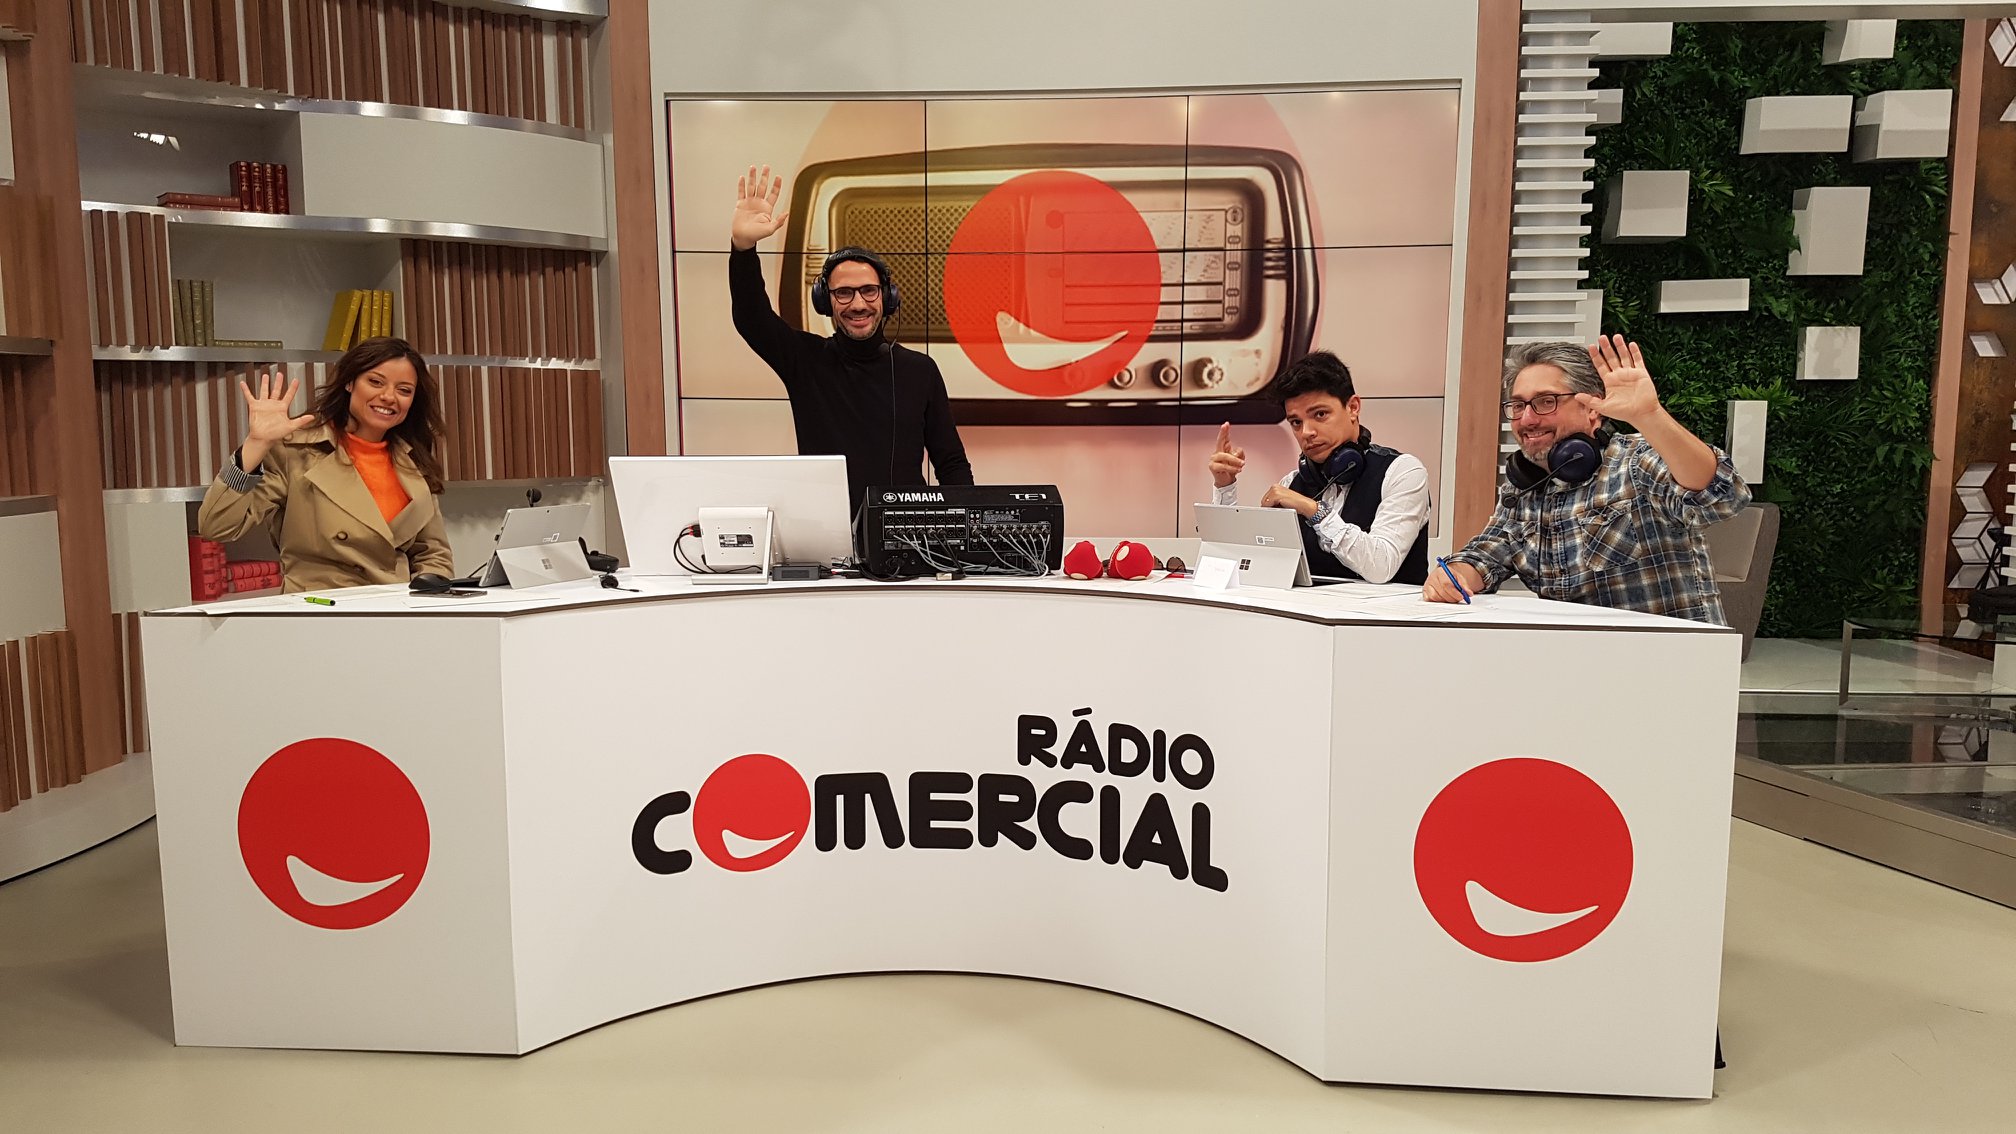 Rádio Comercial Você Na Tv1 A Perder Em Tv, Media Capital Bate Concorrência Na Rádio